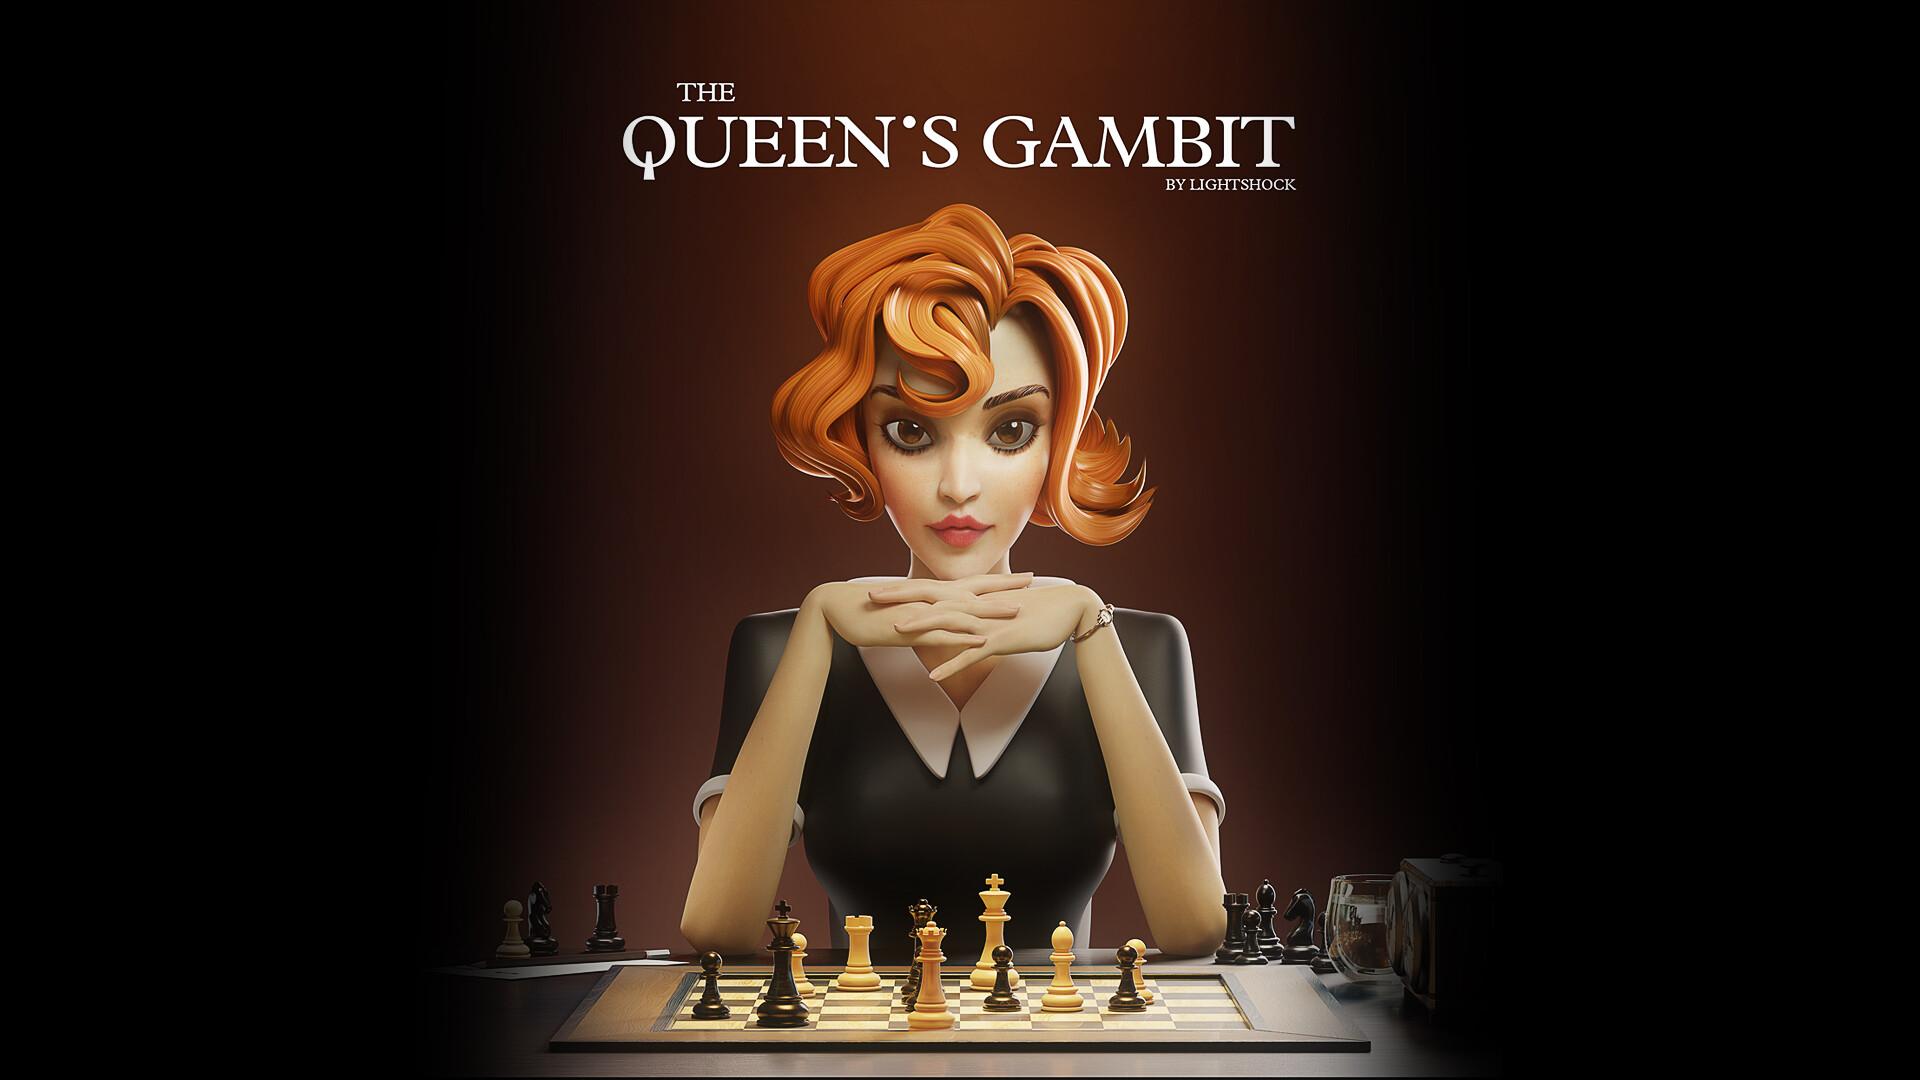 The Queen's Gambit wallpaper  Queen's gambit wallpaper, The queen's gambit,  Queen's gambit